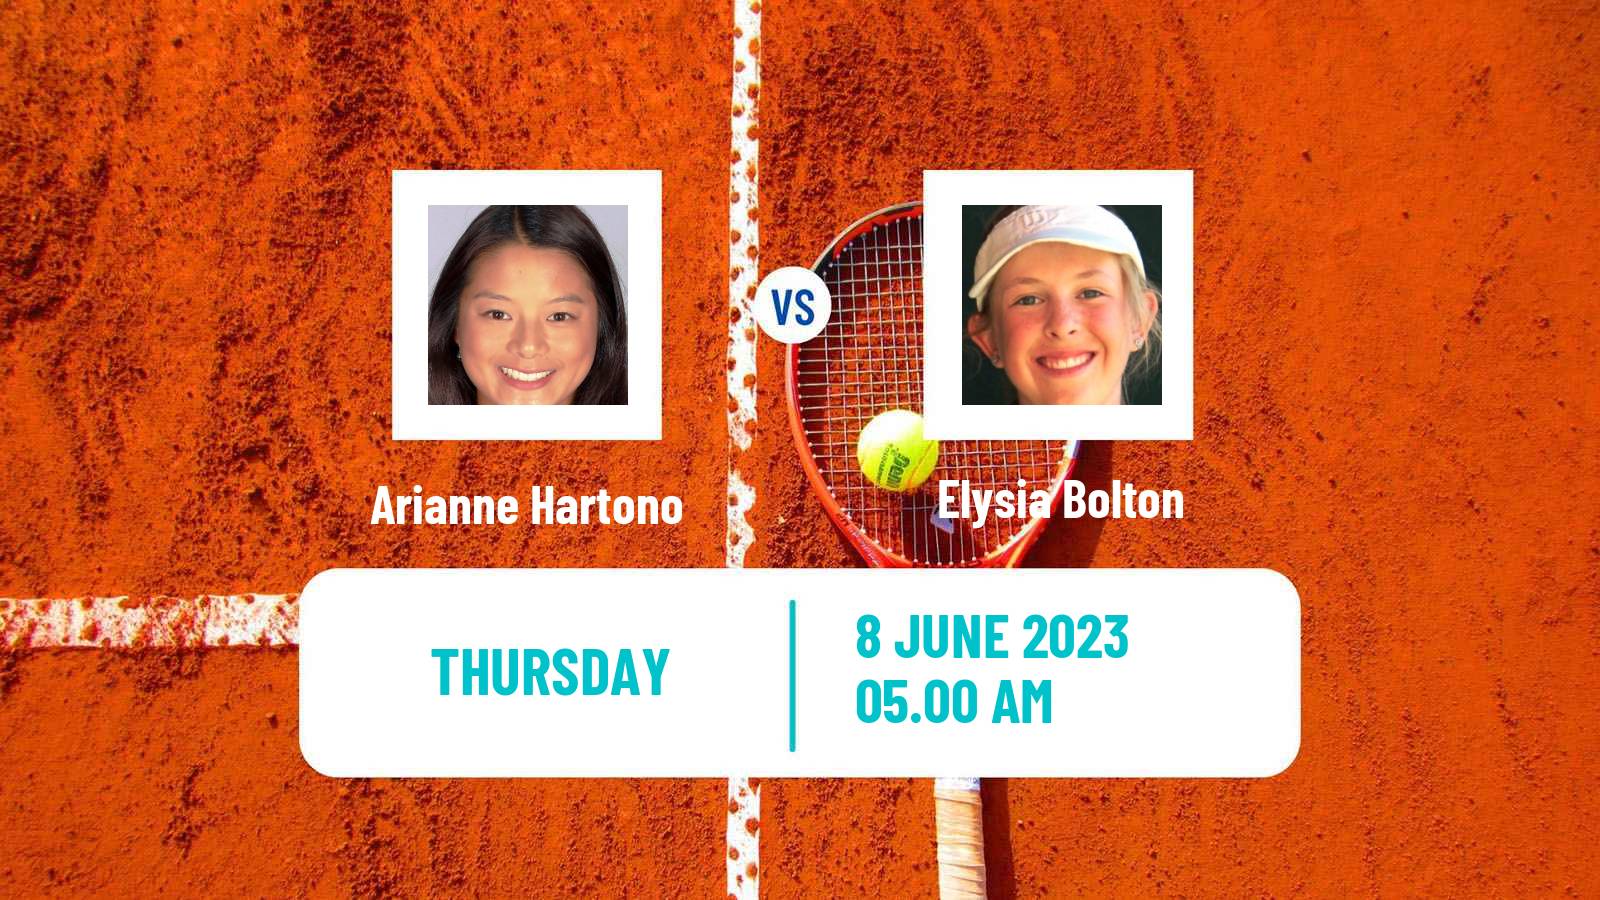 Tennis ITF W25 Setubal Women Arianne Hartono - Elysia Bolton